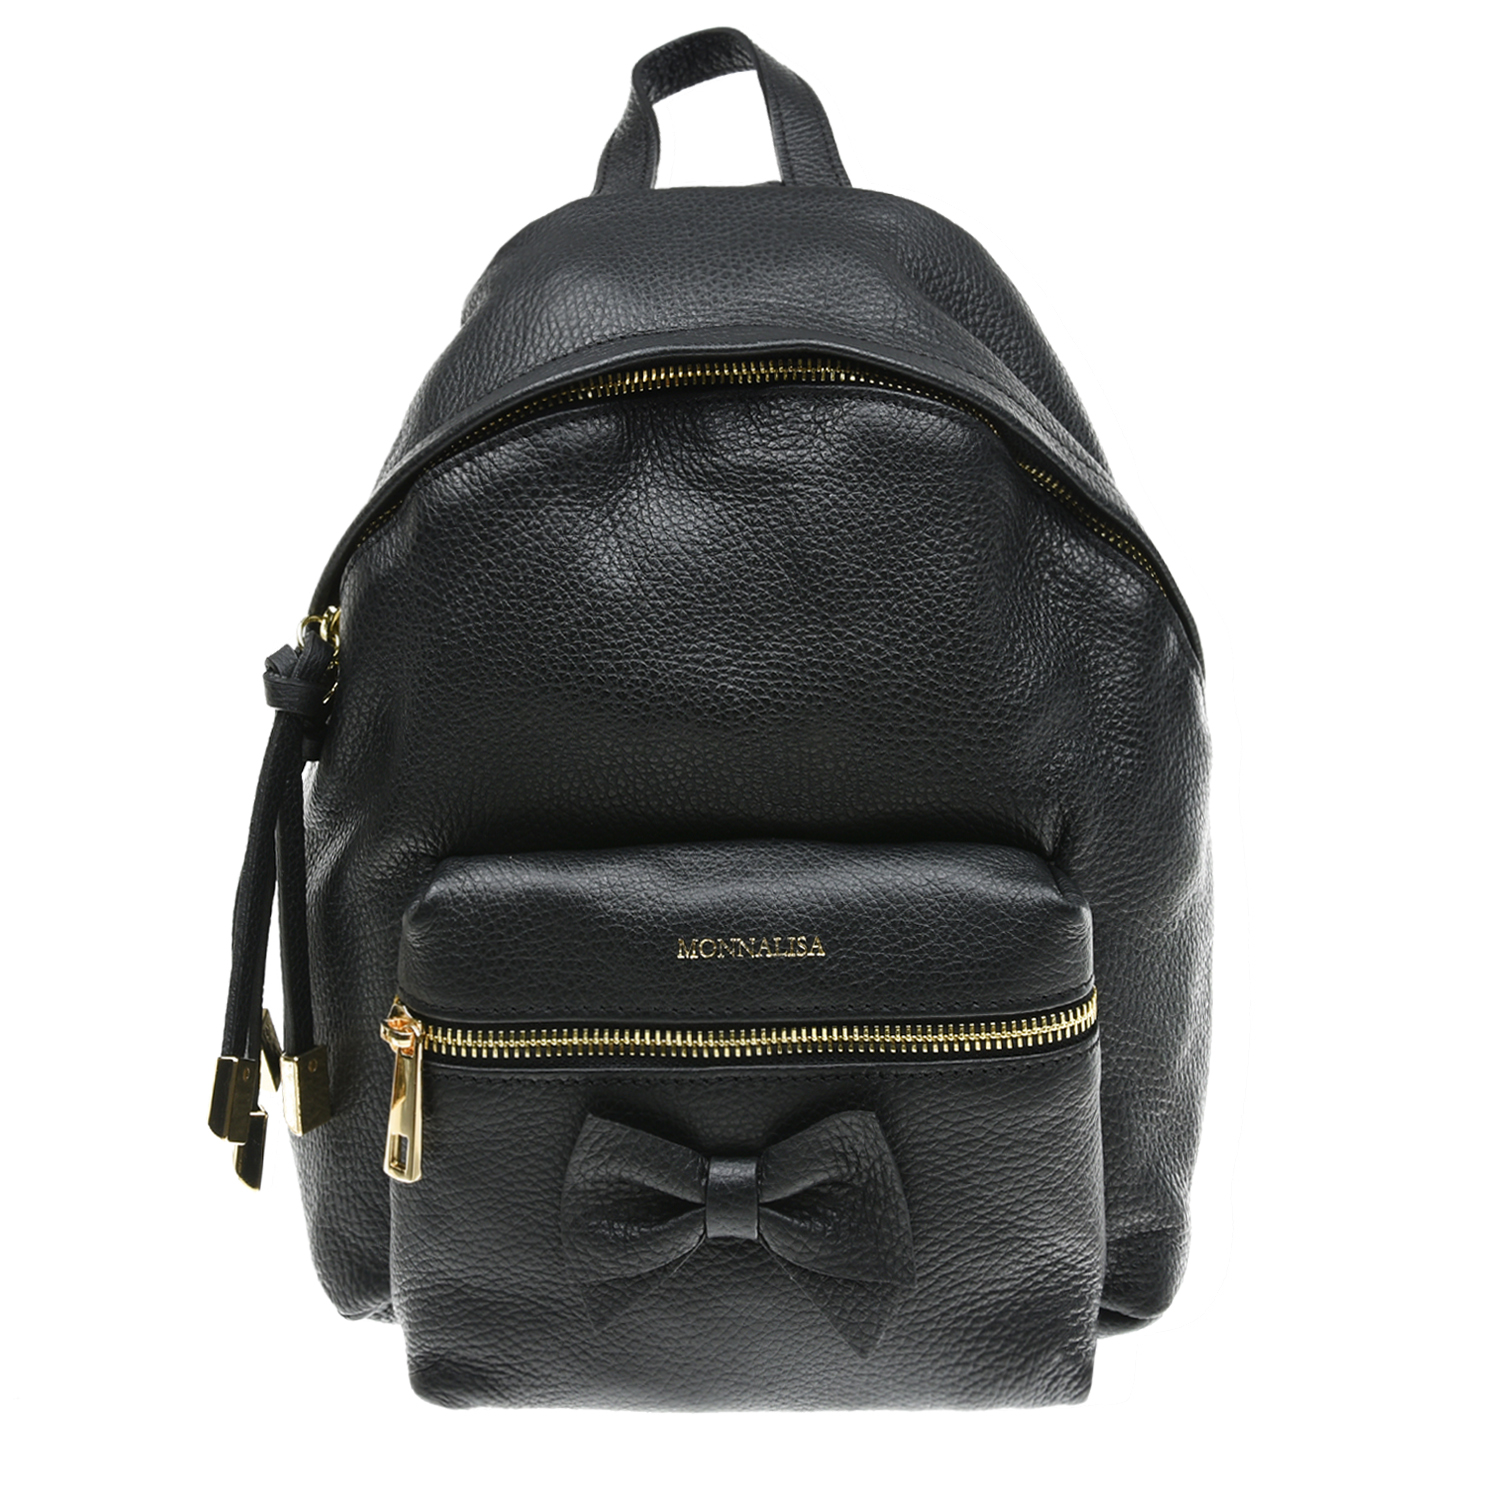 Черный рюкзак с бантом, 21х8х27 см Monnalisa детский, размер unica - фото 1